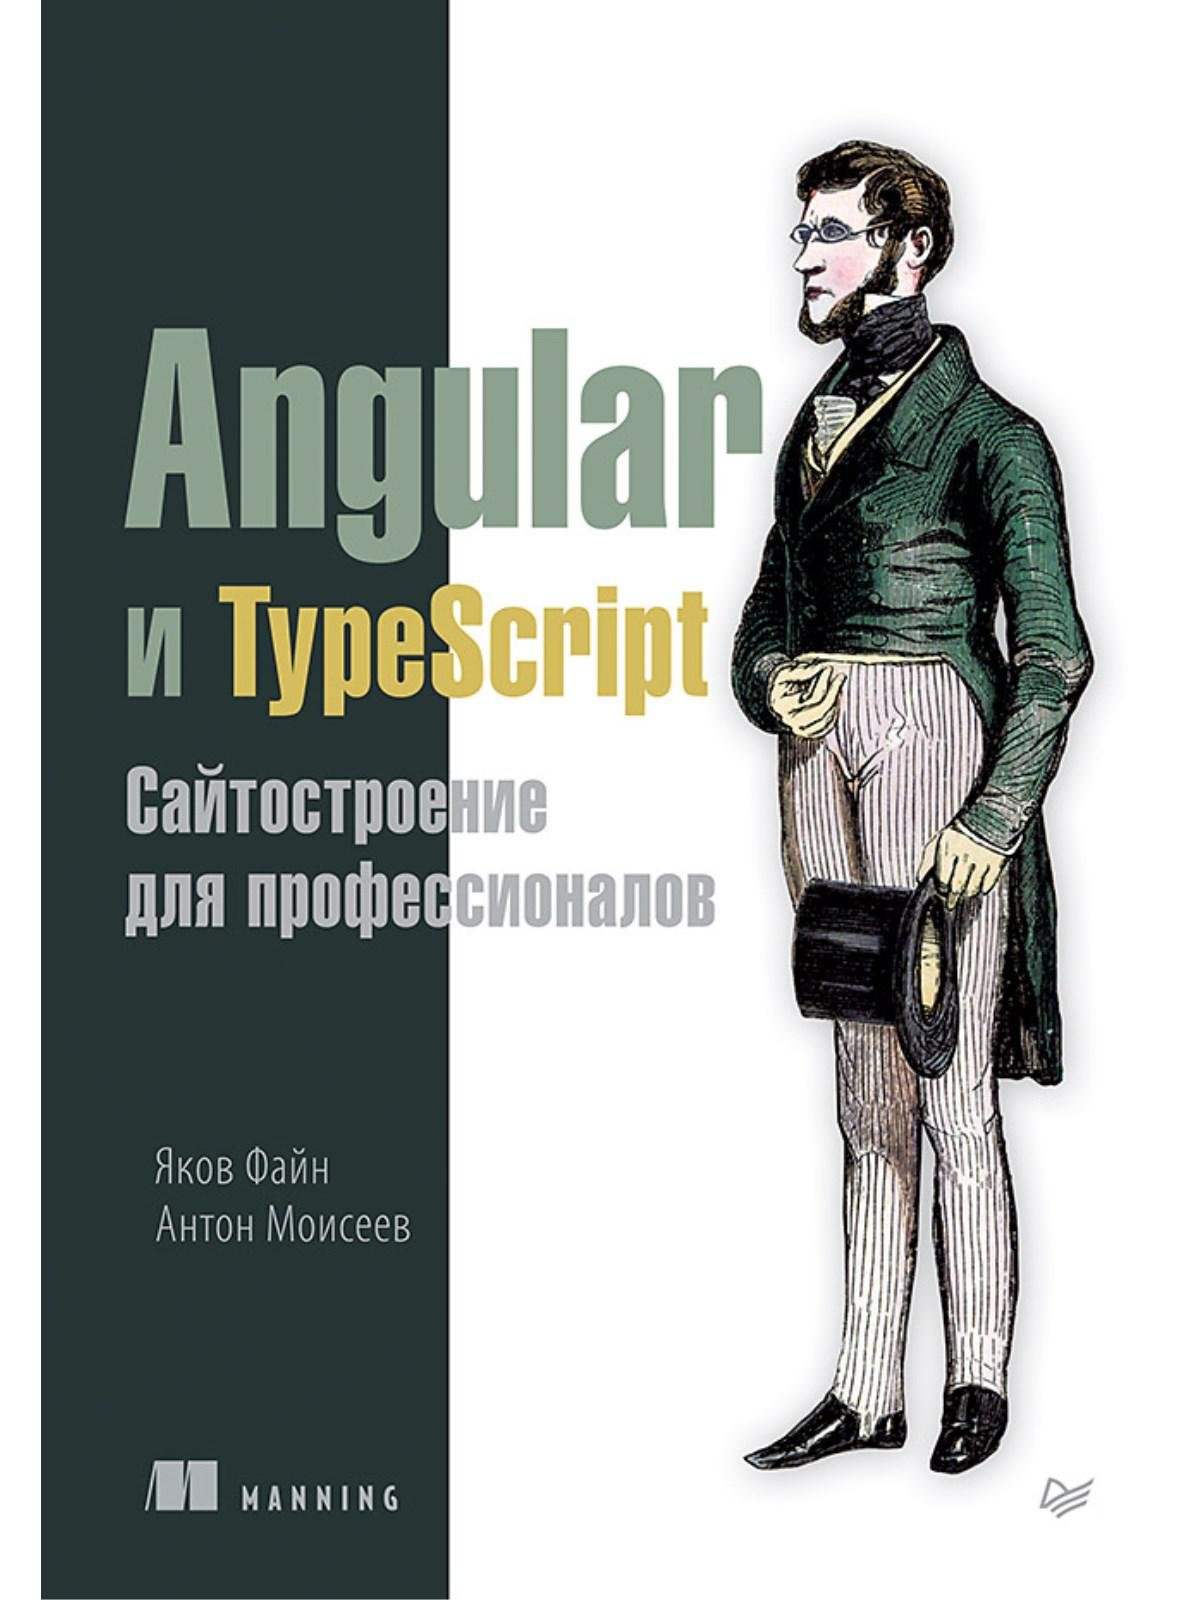 Программирование Angular и TypeScript. Сайтостроение для профессионалов